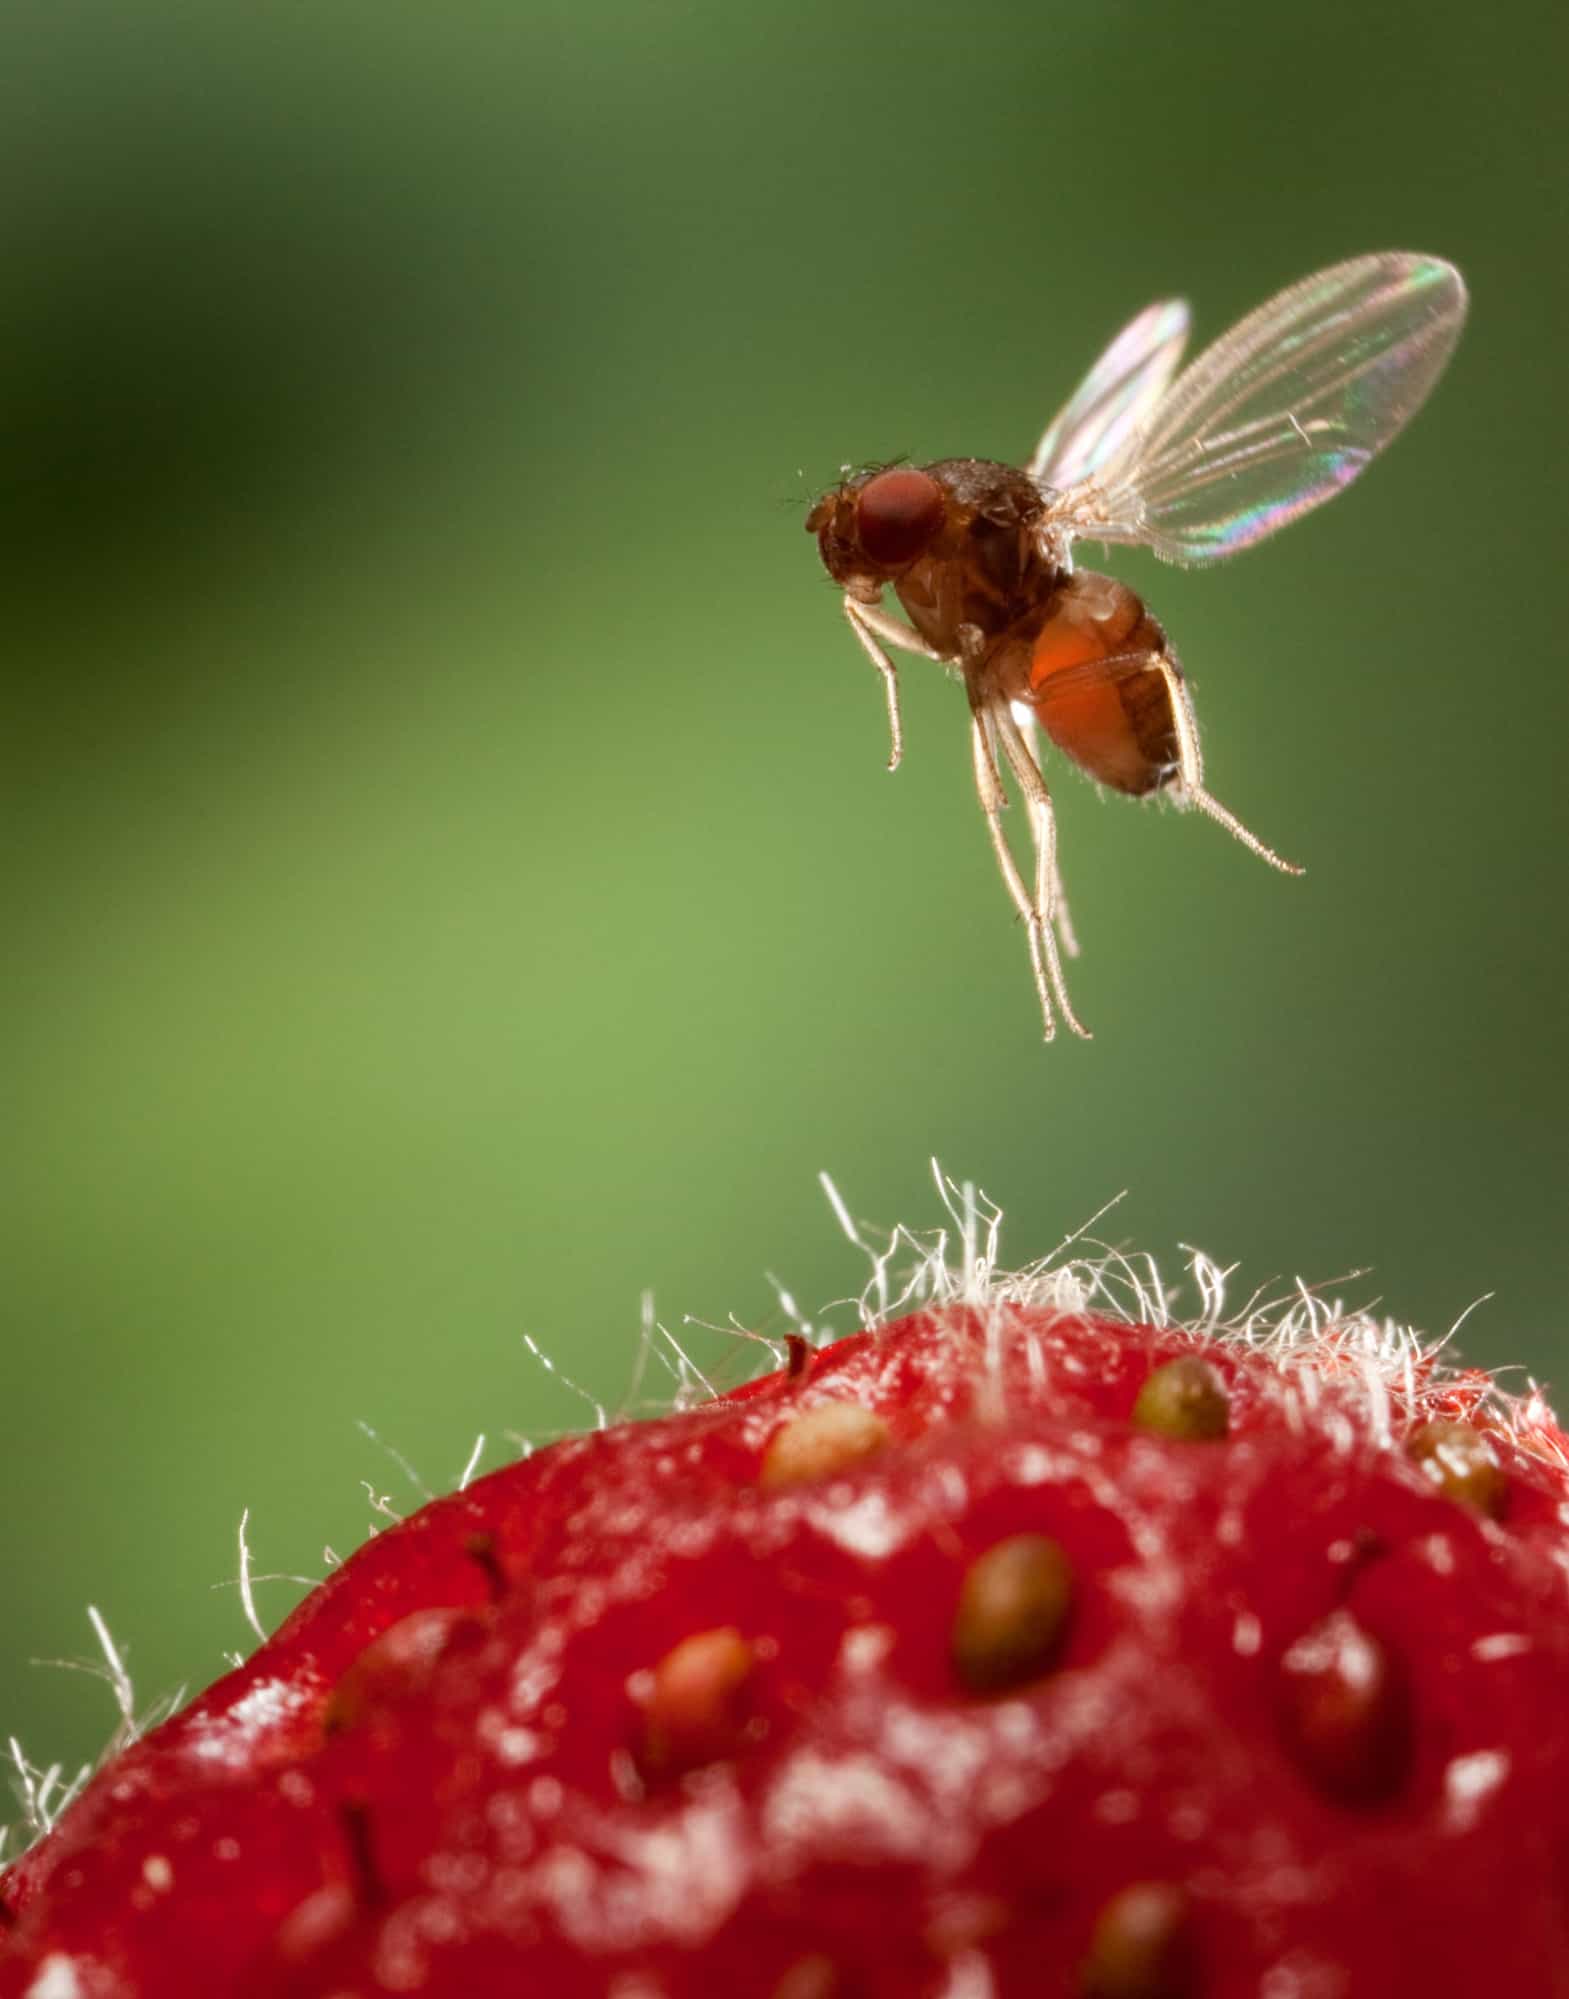 أنثى ذبابة الفاكهة مرقطة الجناح (المعروفة أيضاً باسم دروسوفيلا سوزوكي) تحلق فوق ثمرة فراولة.